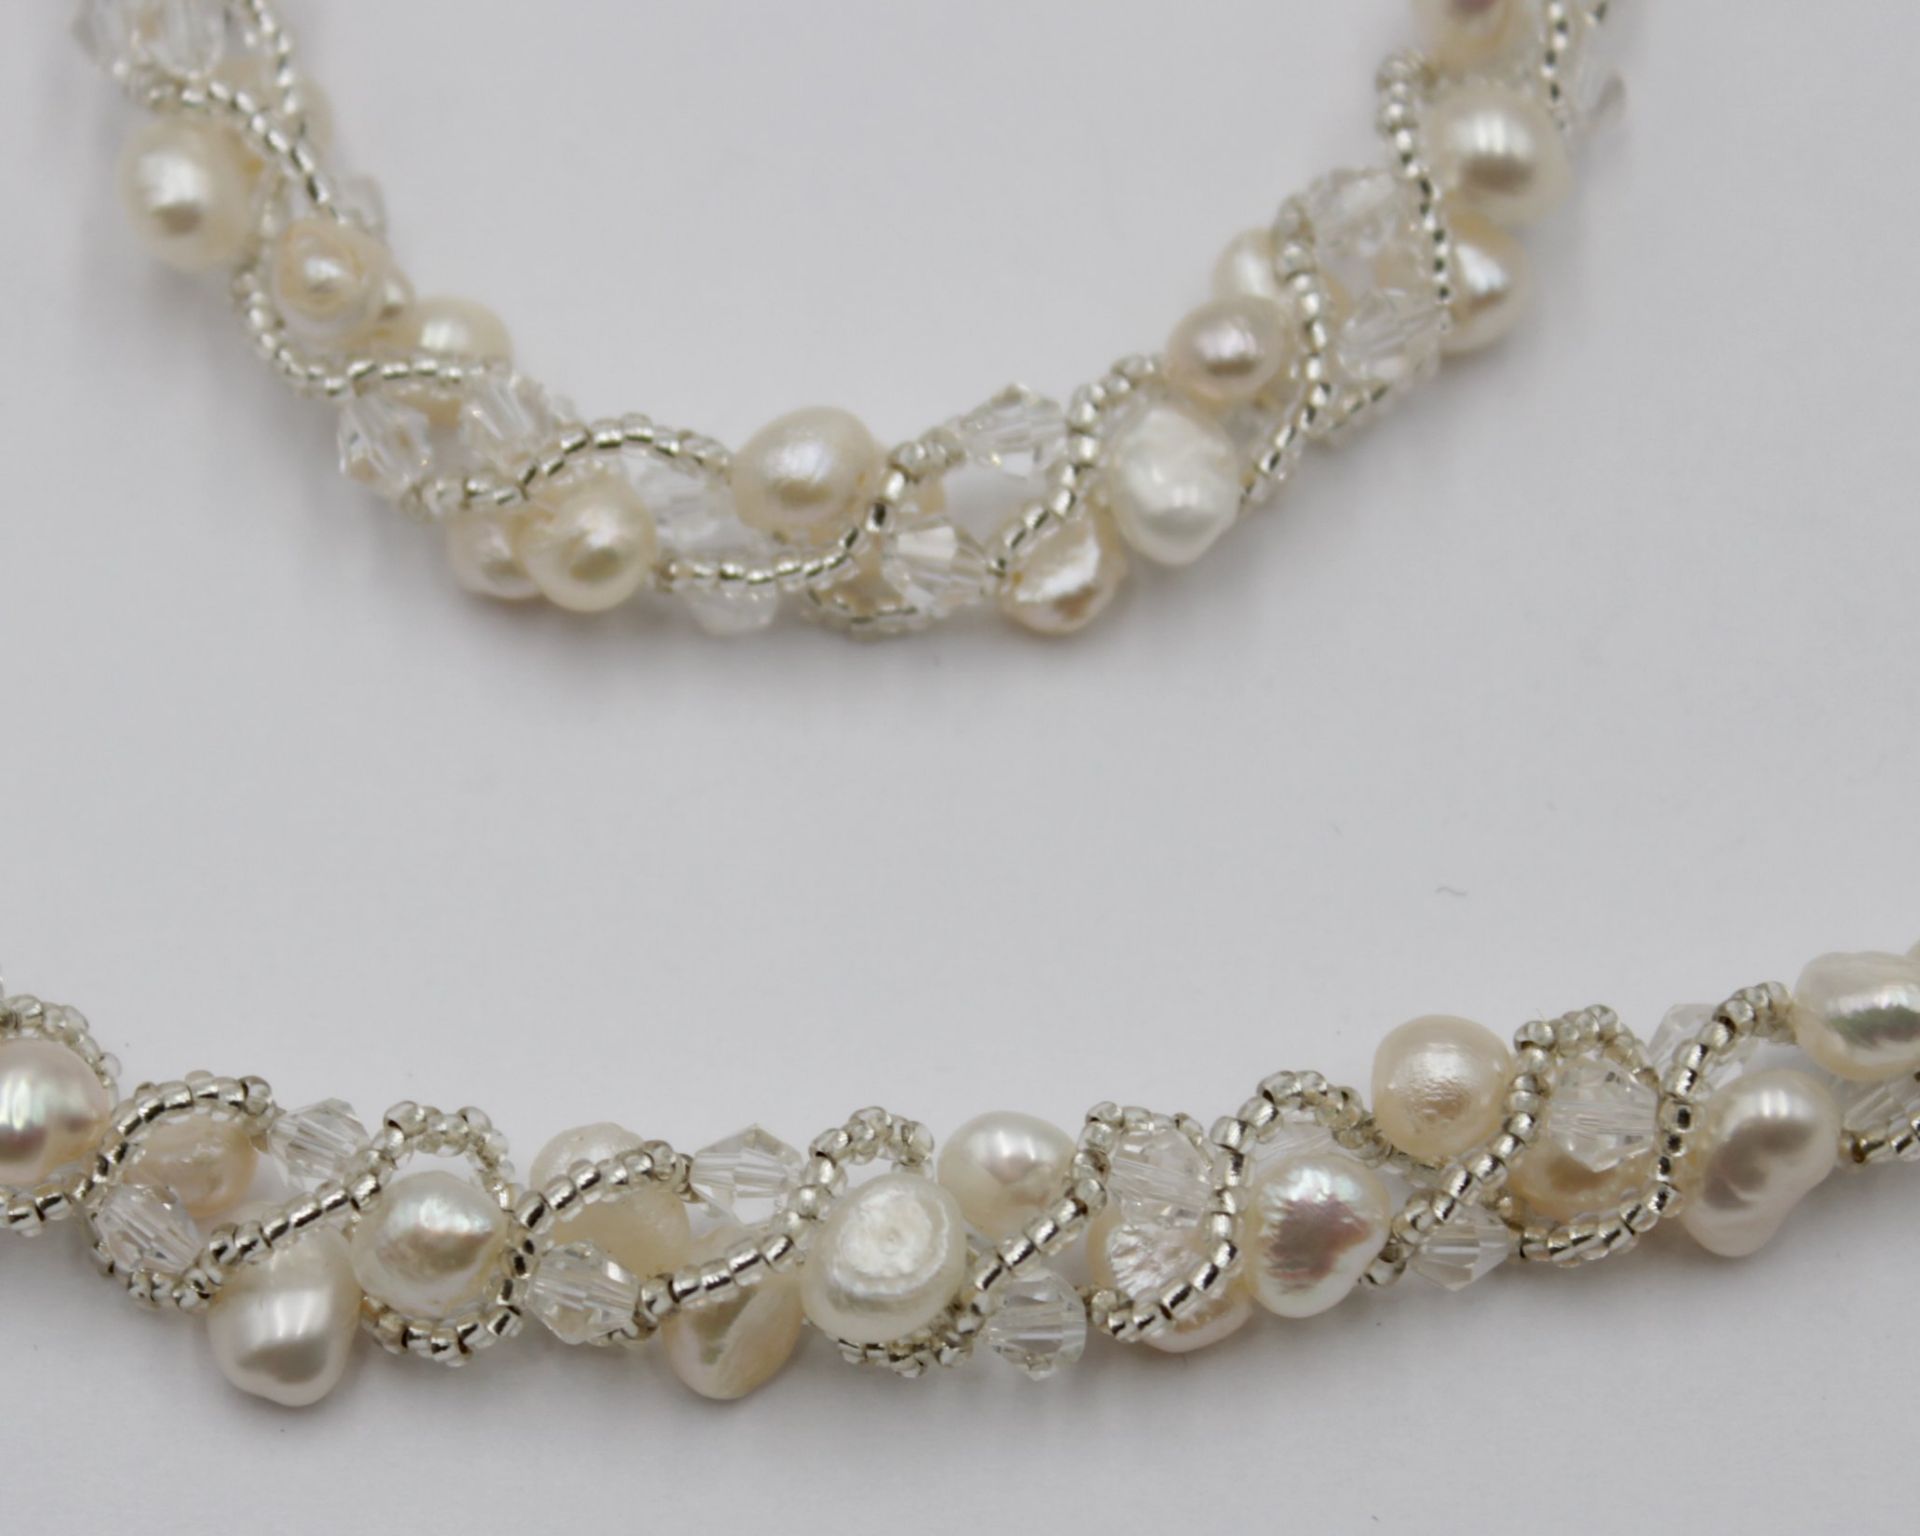 2tlg. Set, Kette und Armband, SW-Perlen, silberfarbene Schließen, ca. L-45cm  u. 19cm. - Bild 2 aus 3